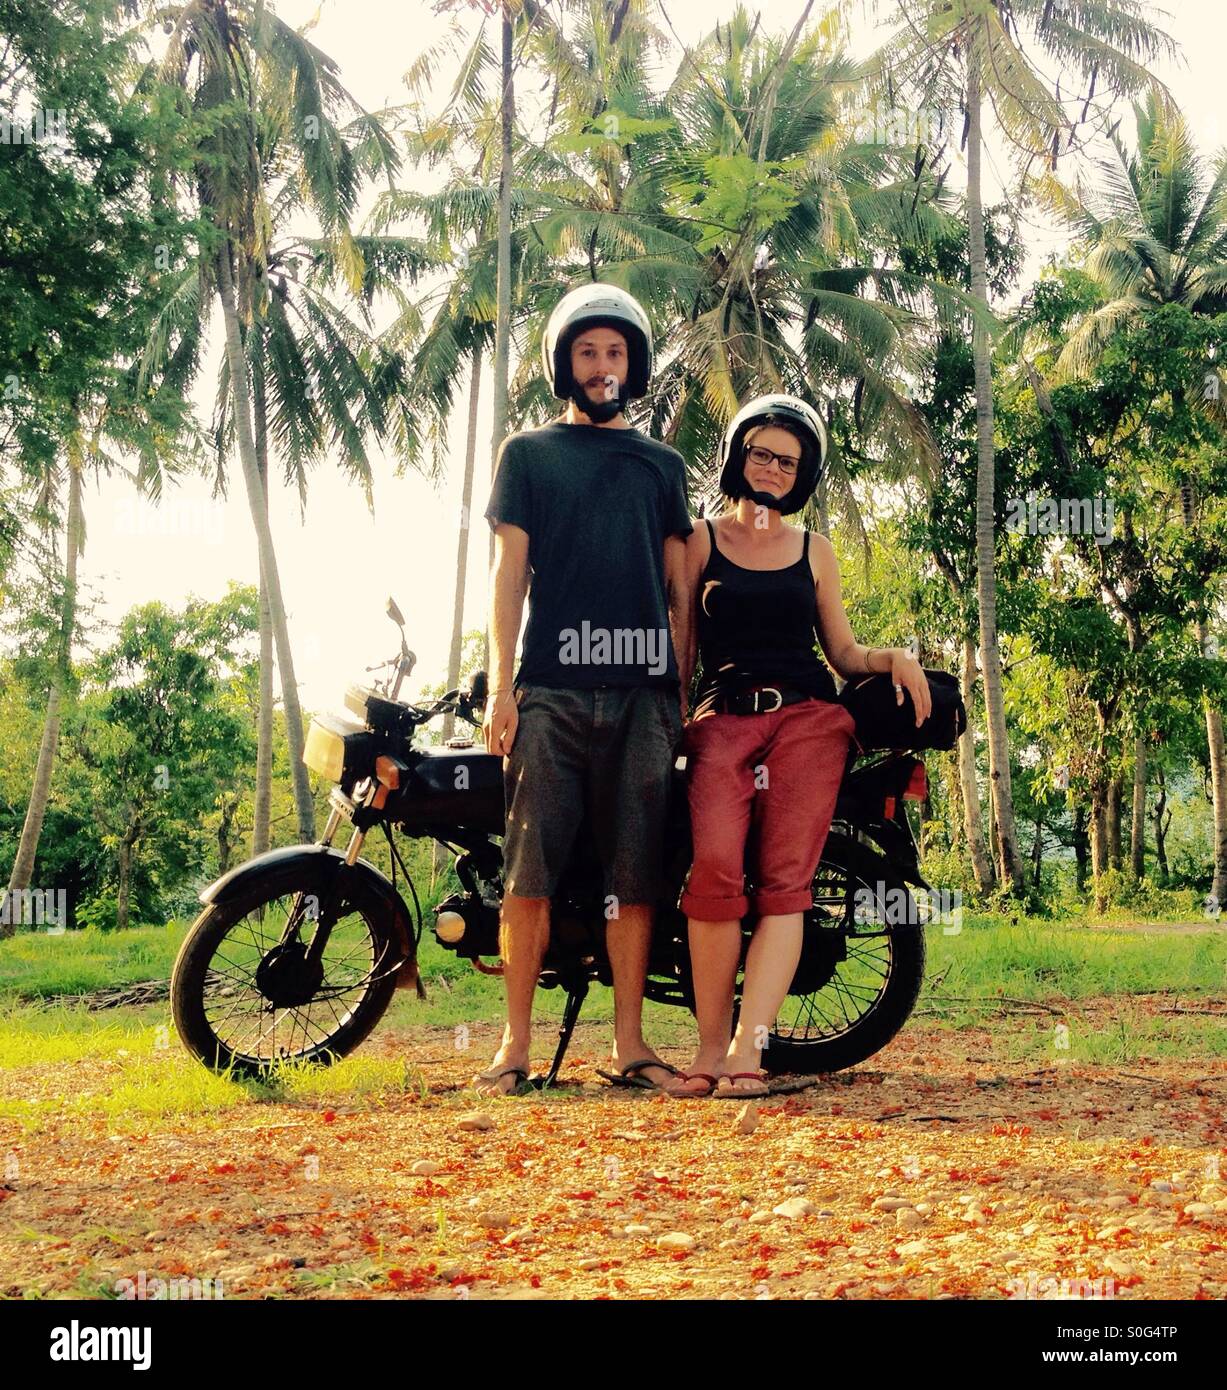 Una pareja con su moto, dos personas de pie delante de una motocicleta vintage en una ubicación tropical, Luang Prabang, Laos, Asia Foto de stock